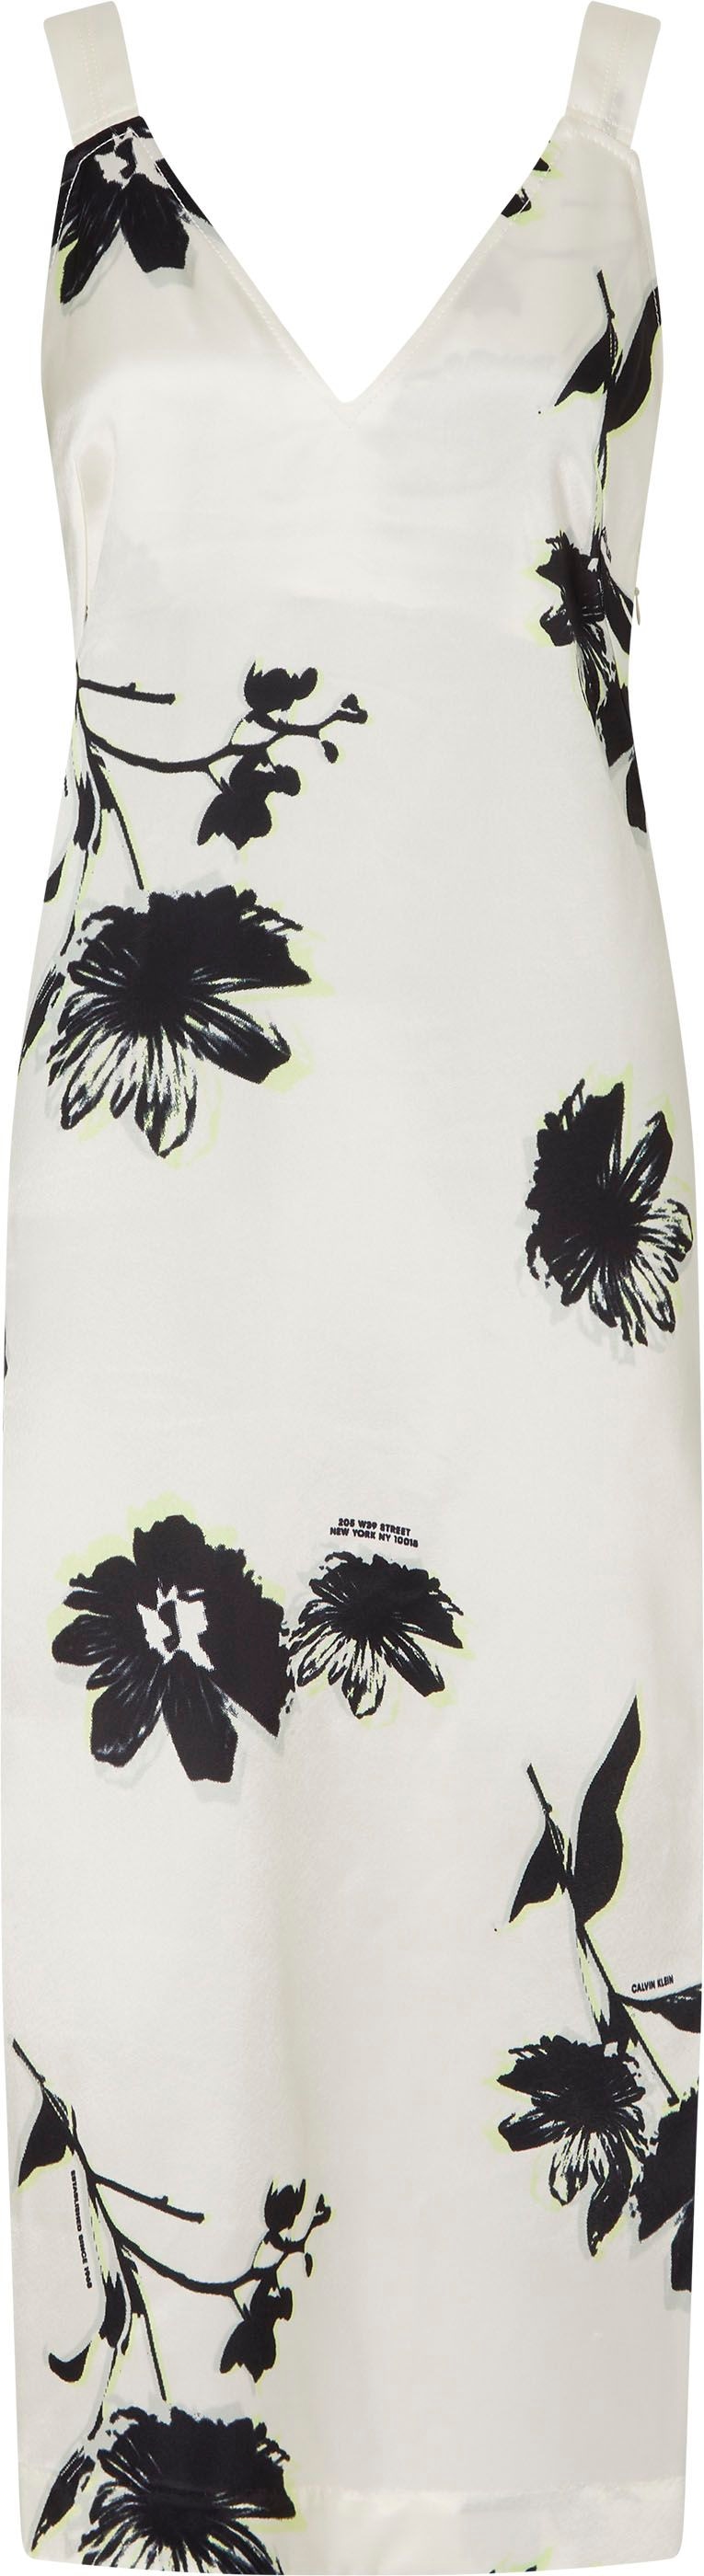 Calvin Klein Trägerkleid, mit tiefem V-Ausschnitt bei OTTOversand